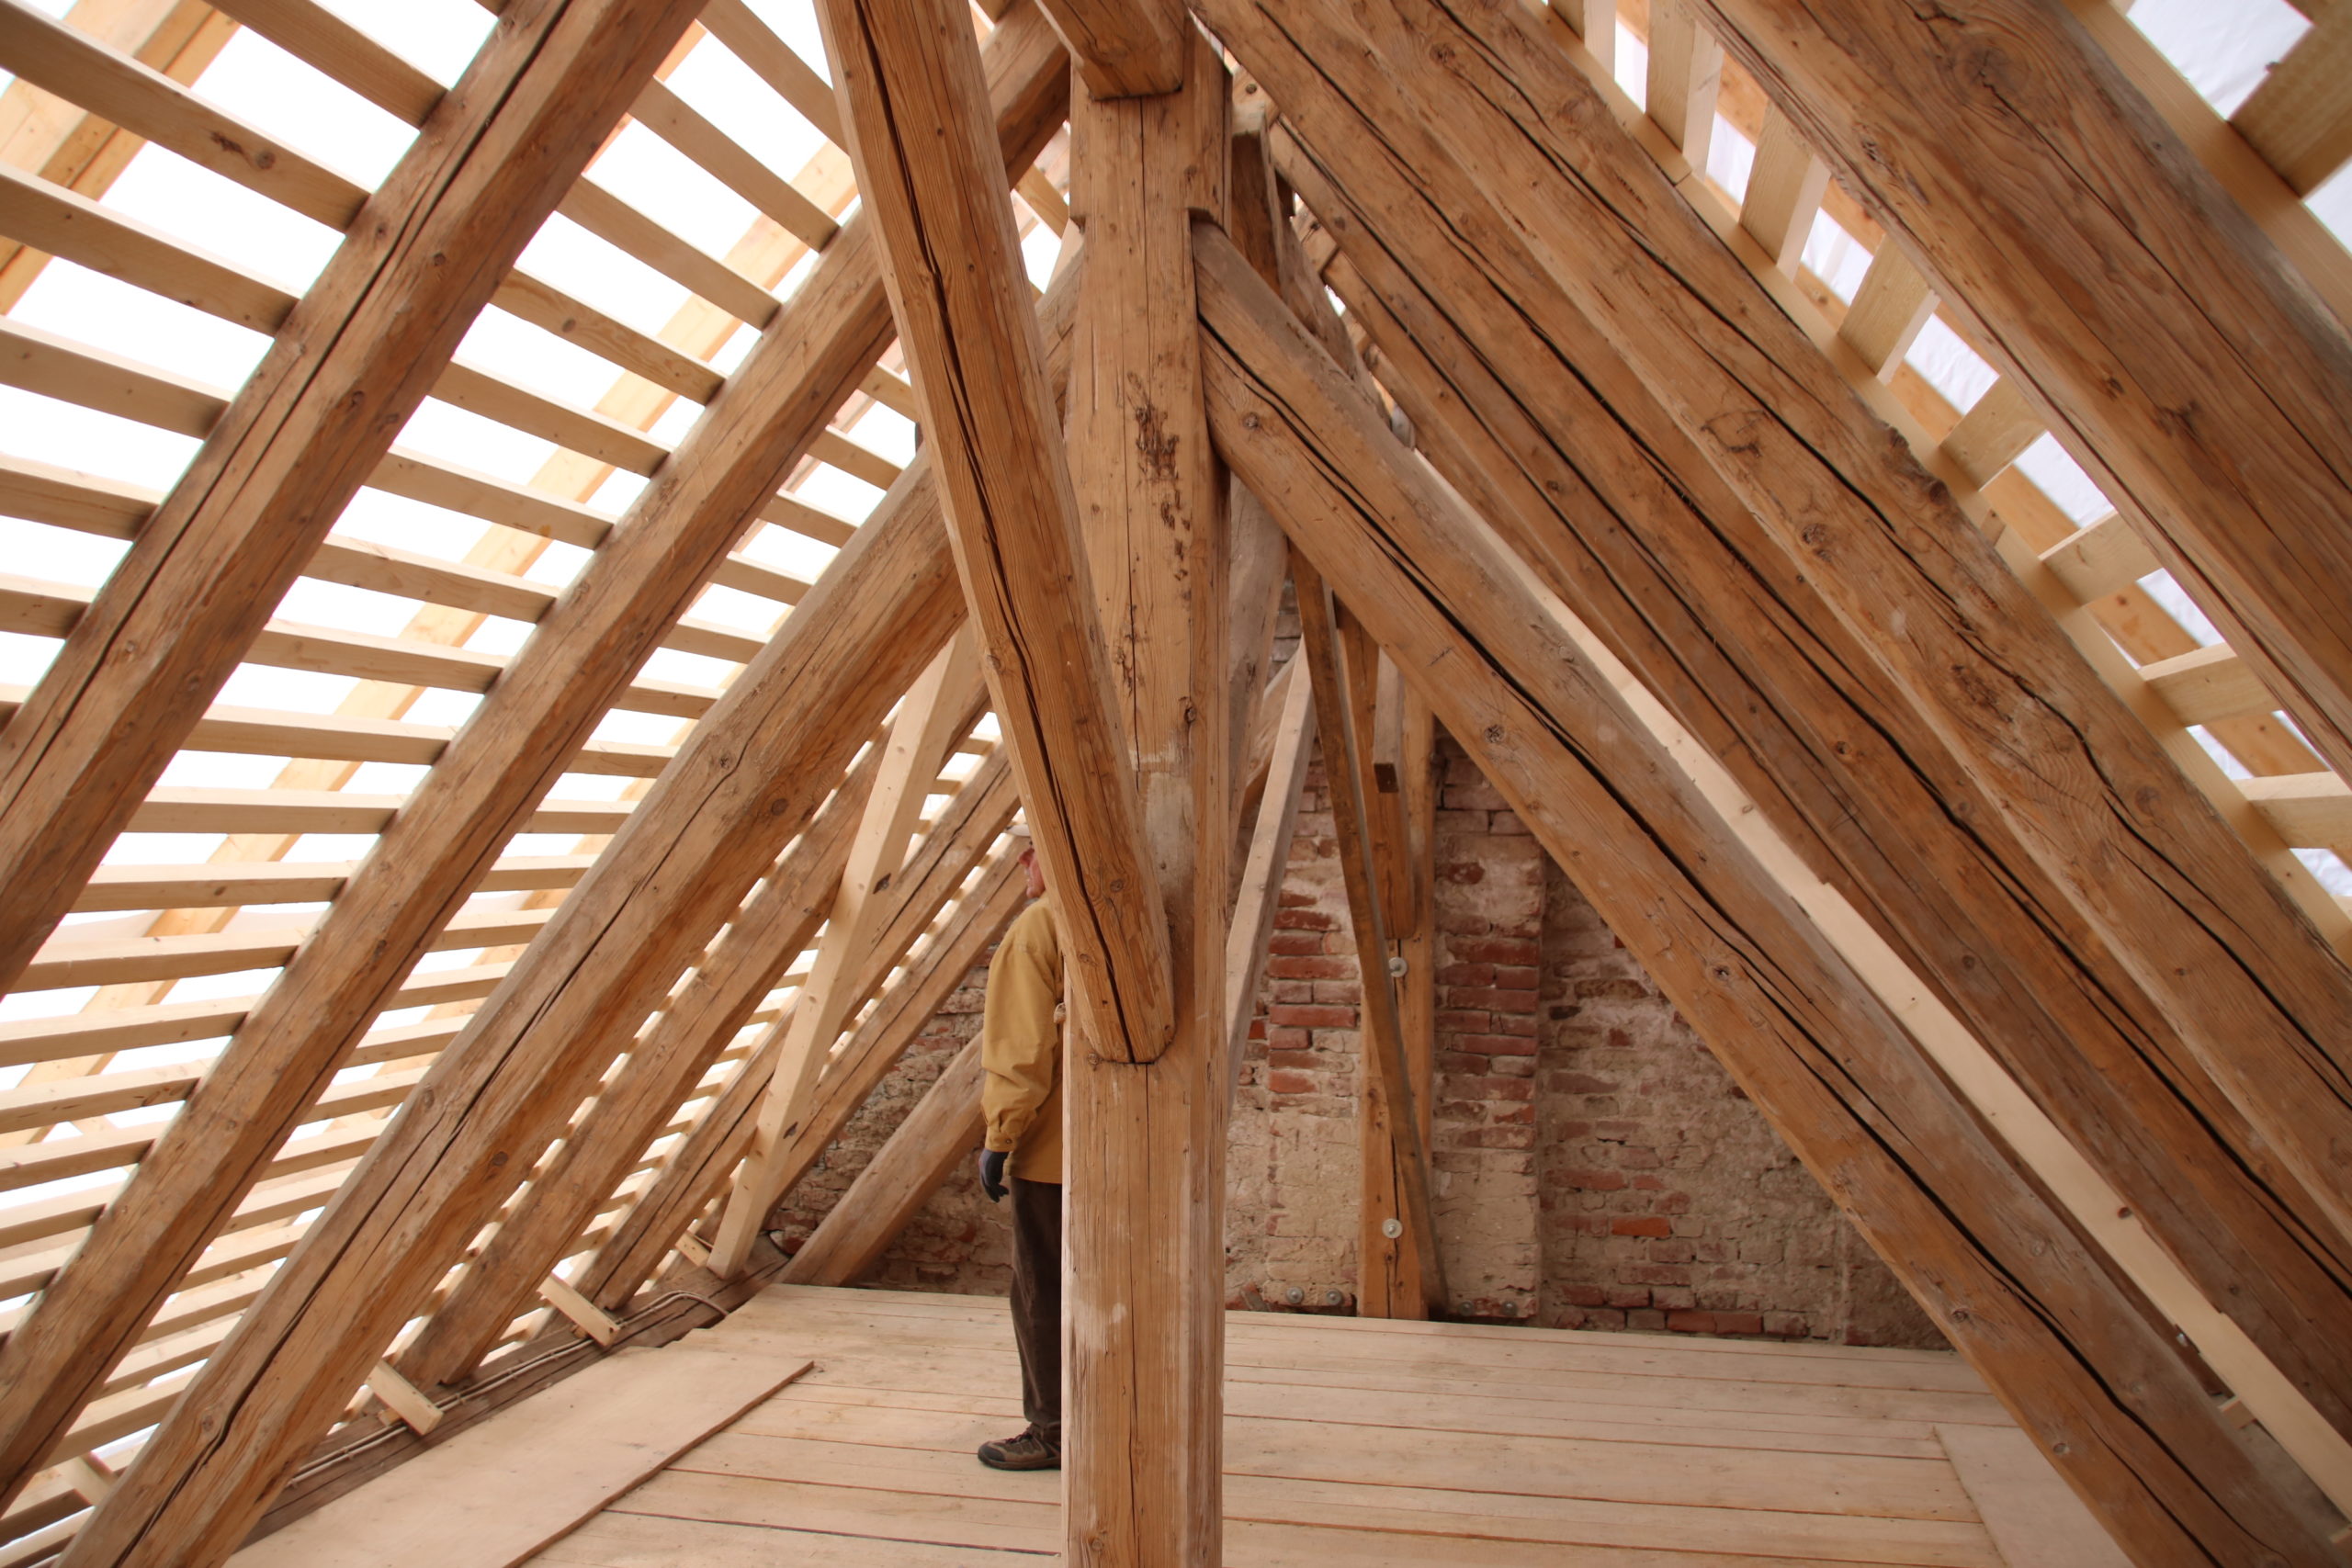 Dachkonstruktion aus Holz von innen